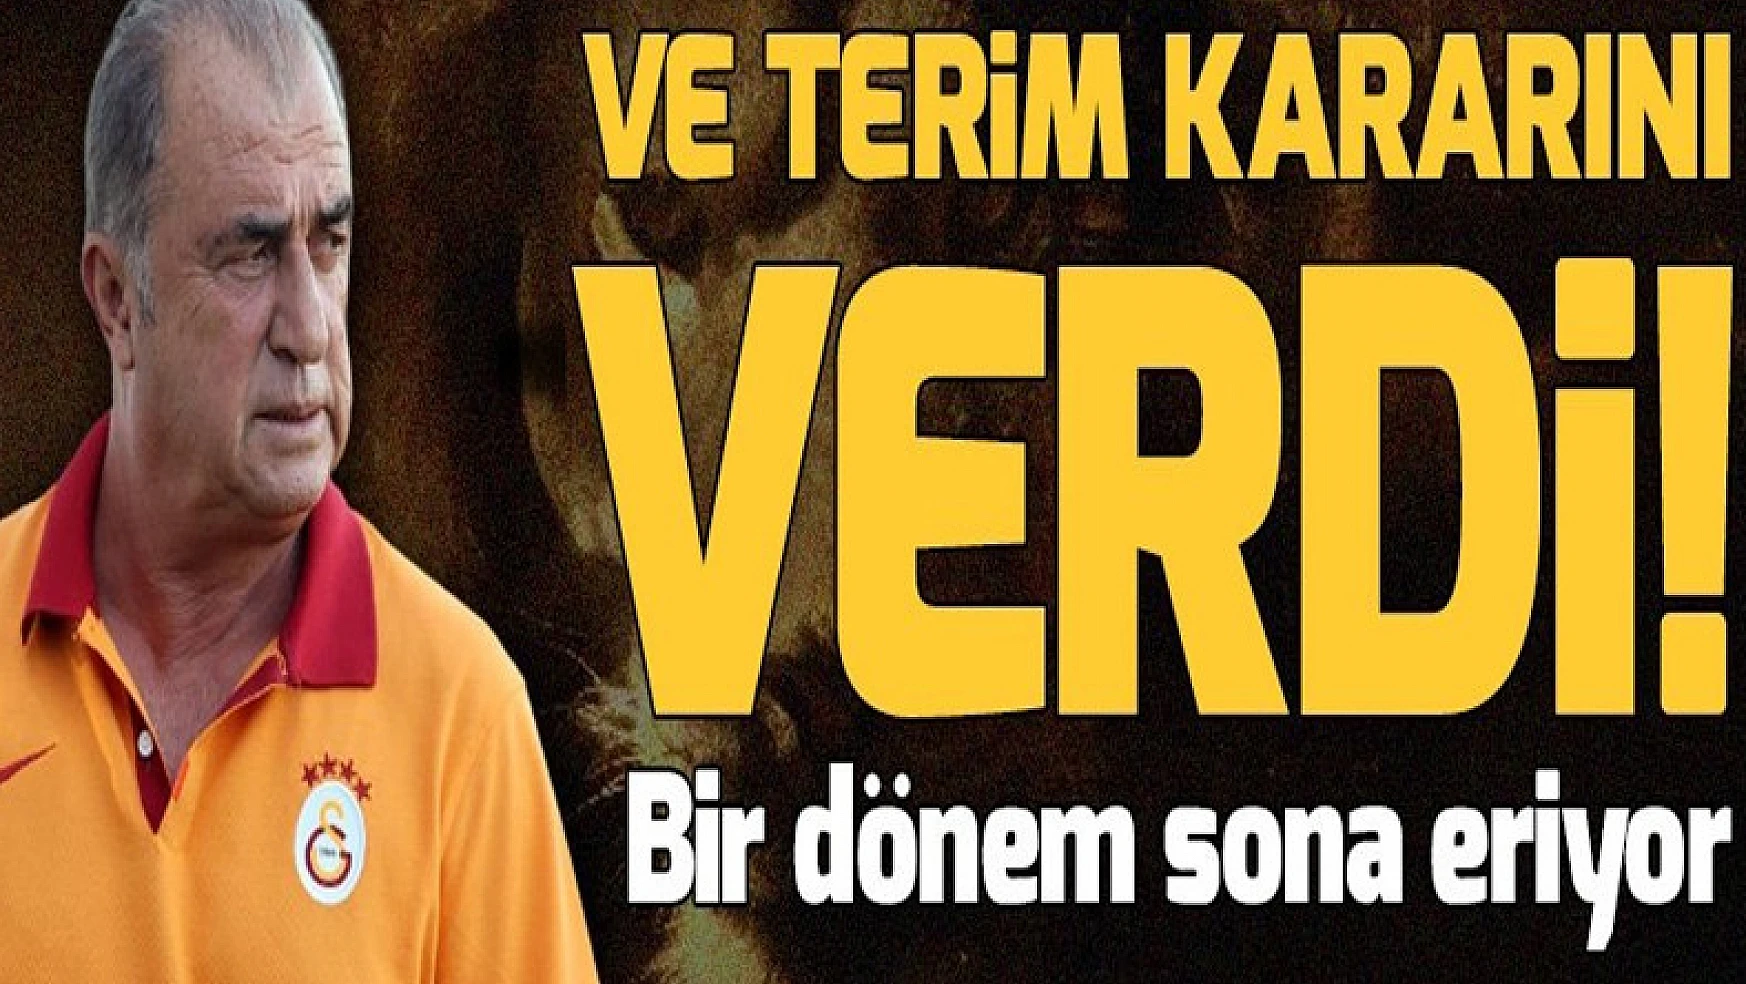 Galatasaray'da Fatih Terim kararını verdi! Bir dönem sona eriyor.